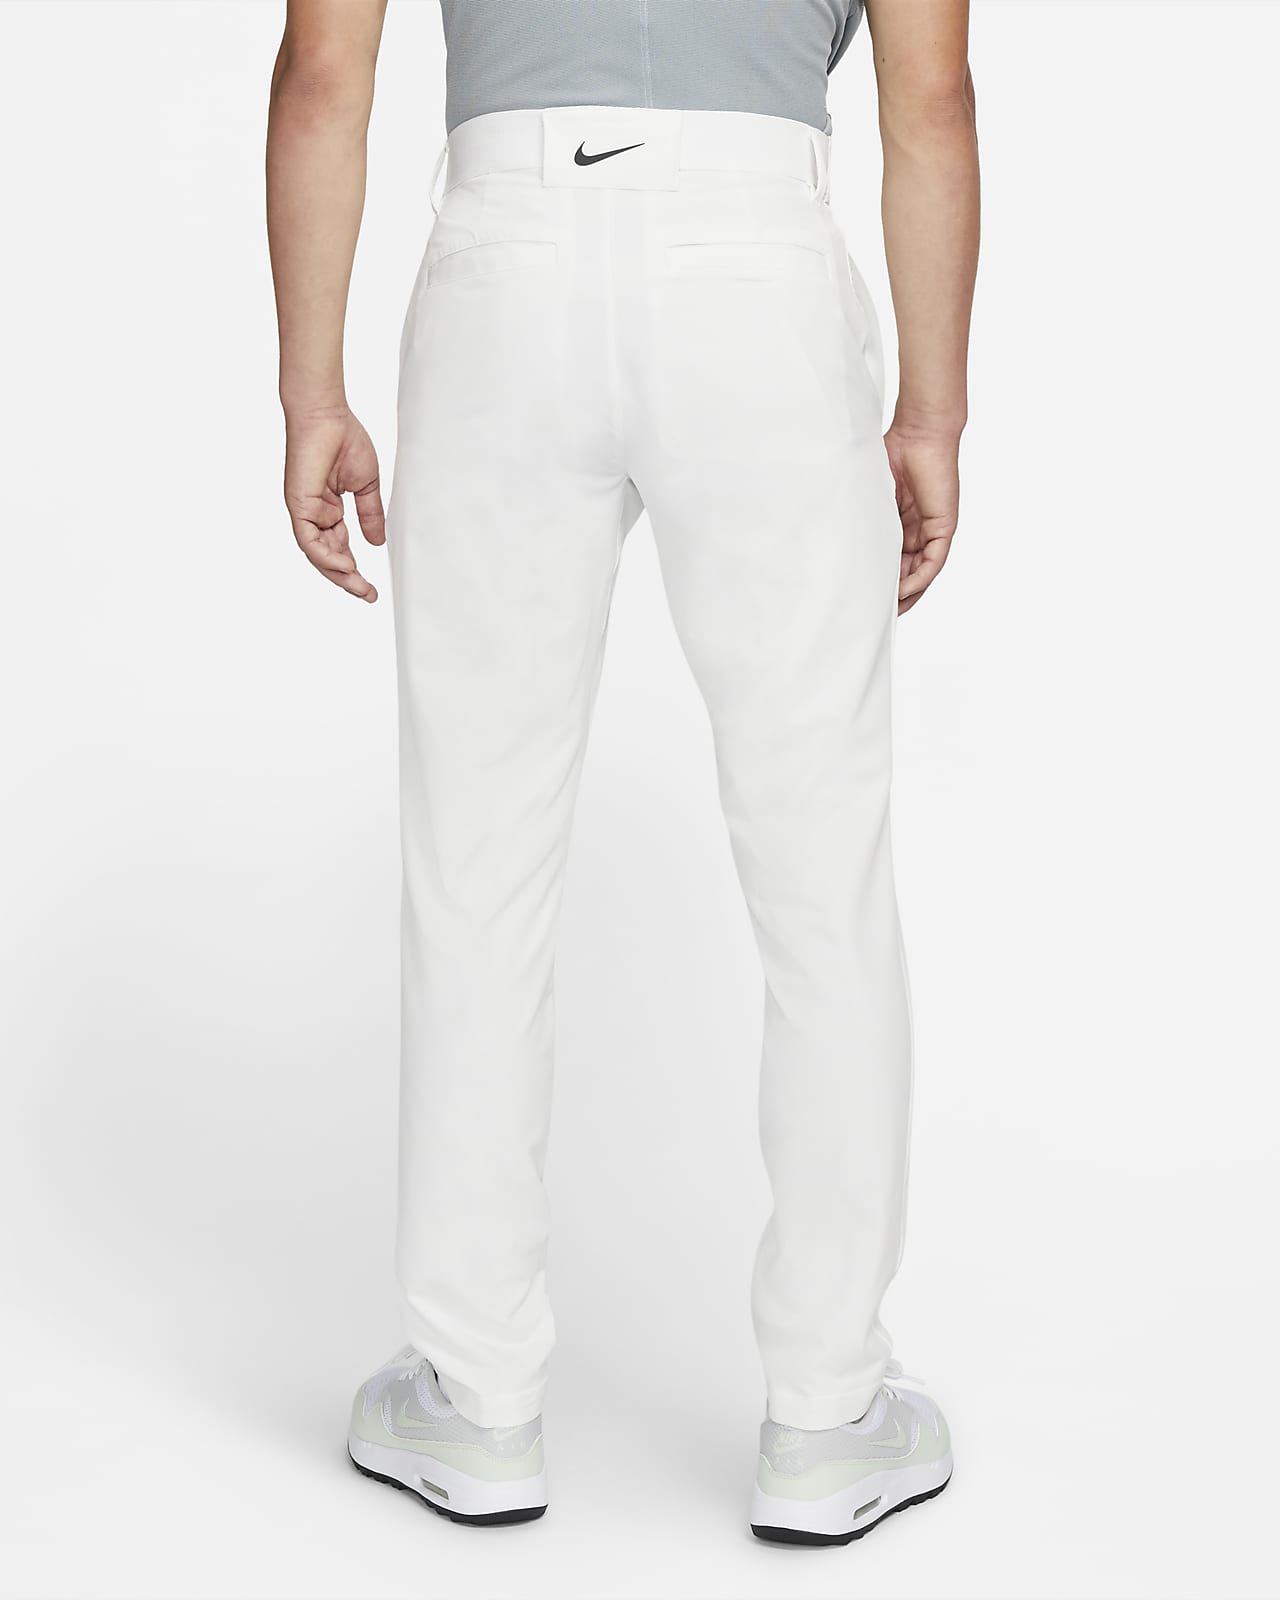 Nike Vapor Men's Pants (Summit White)